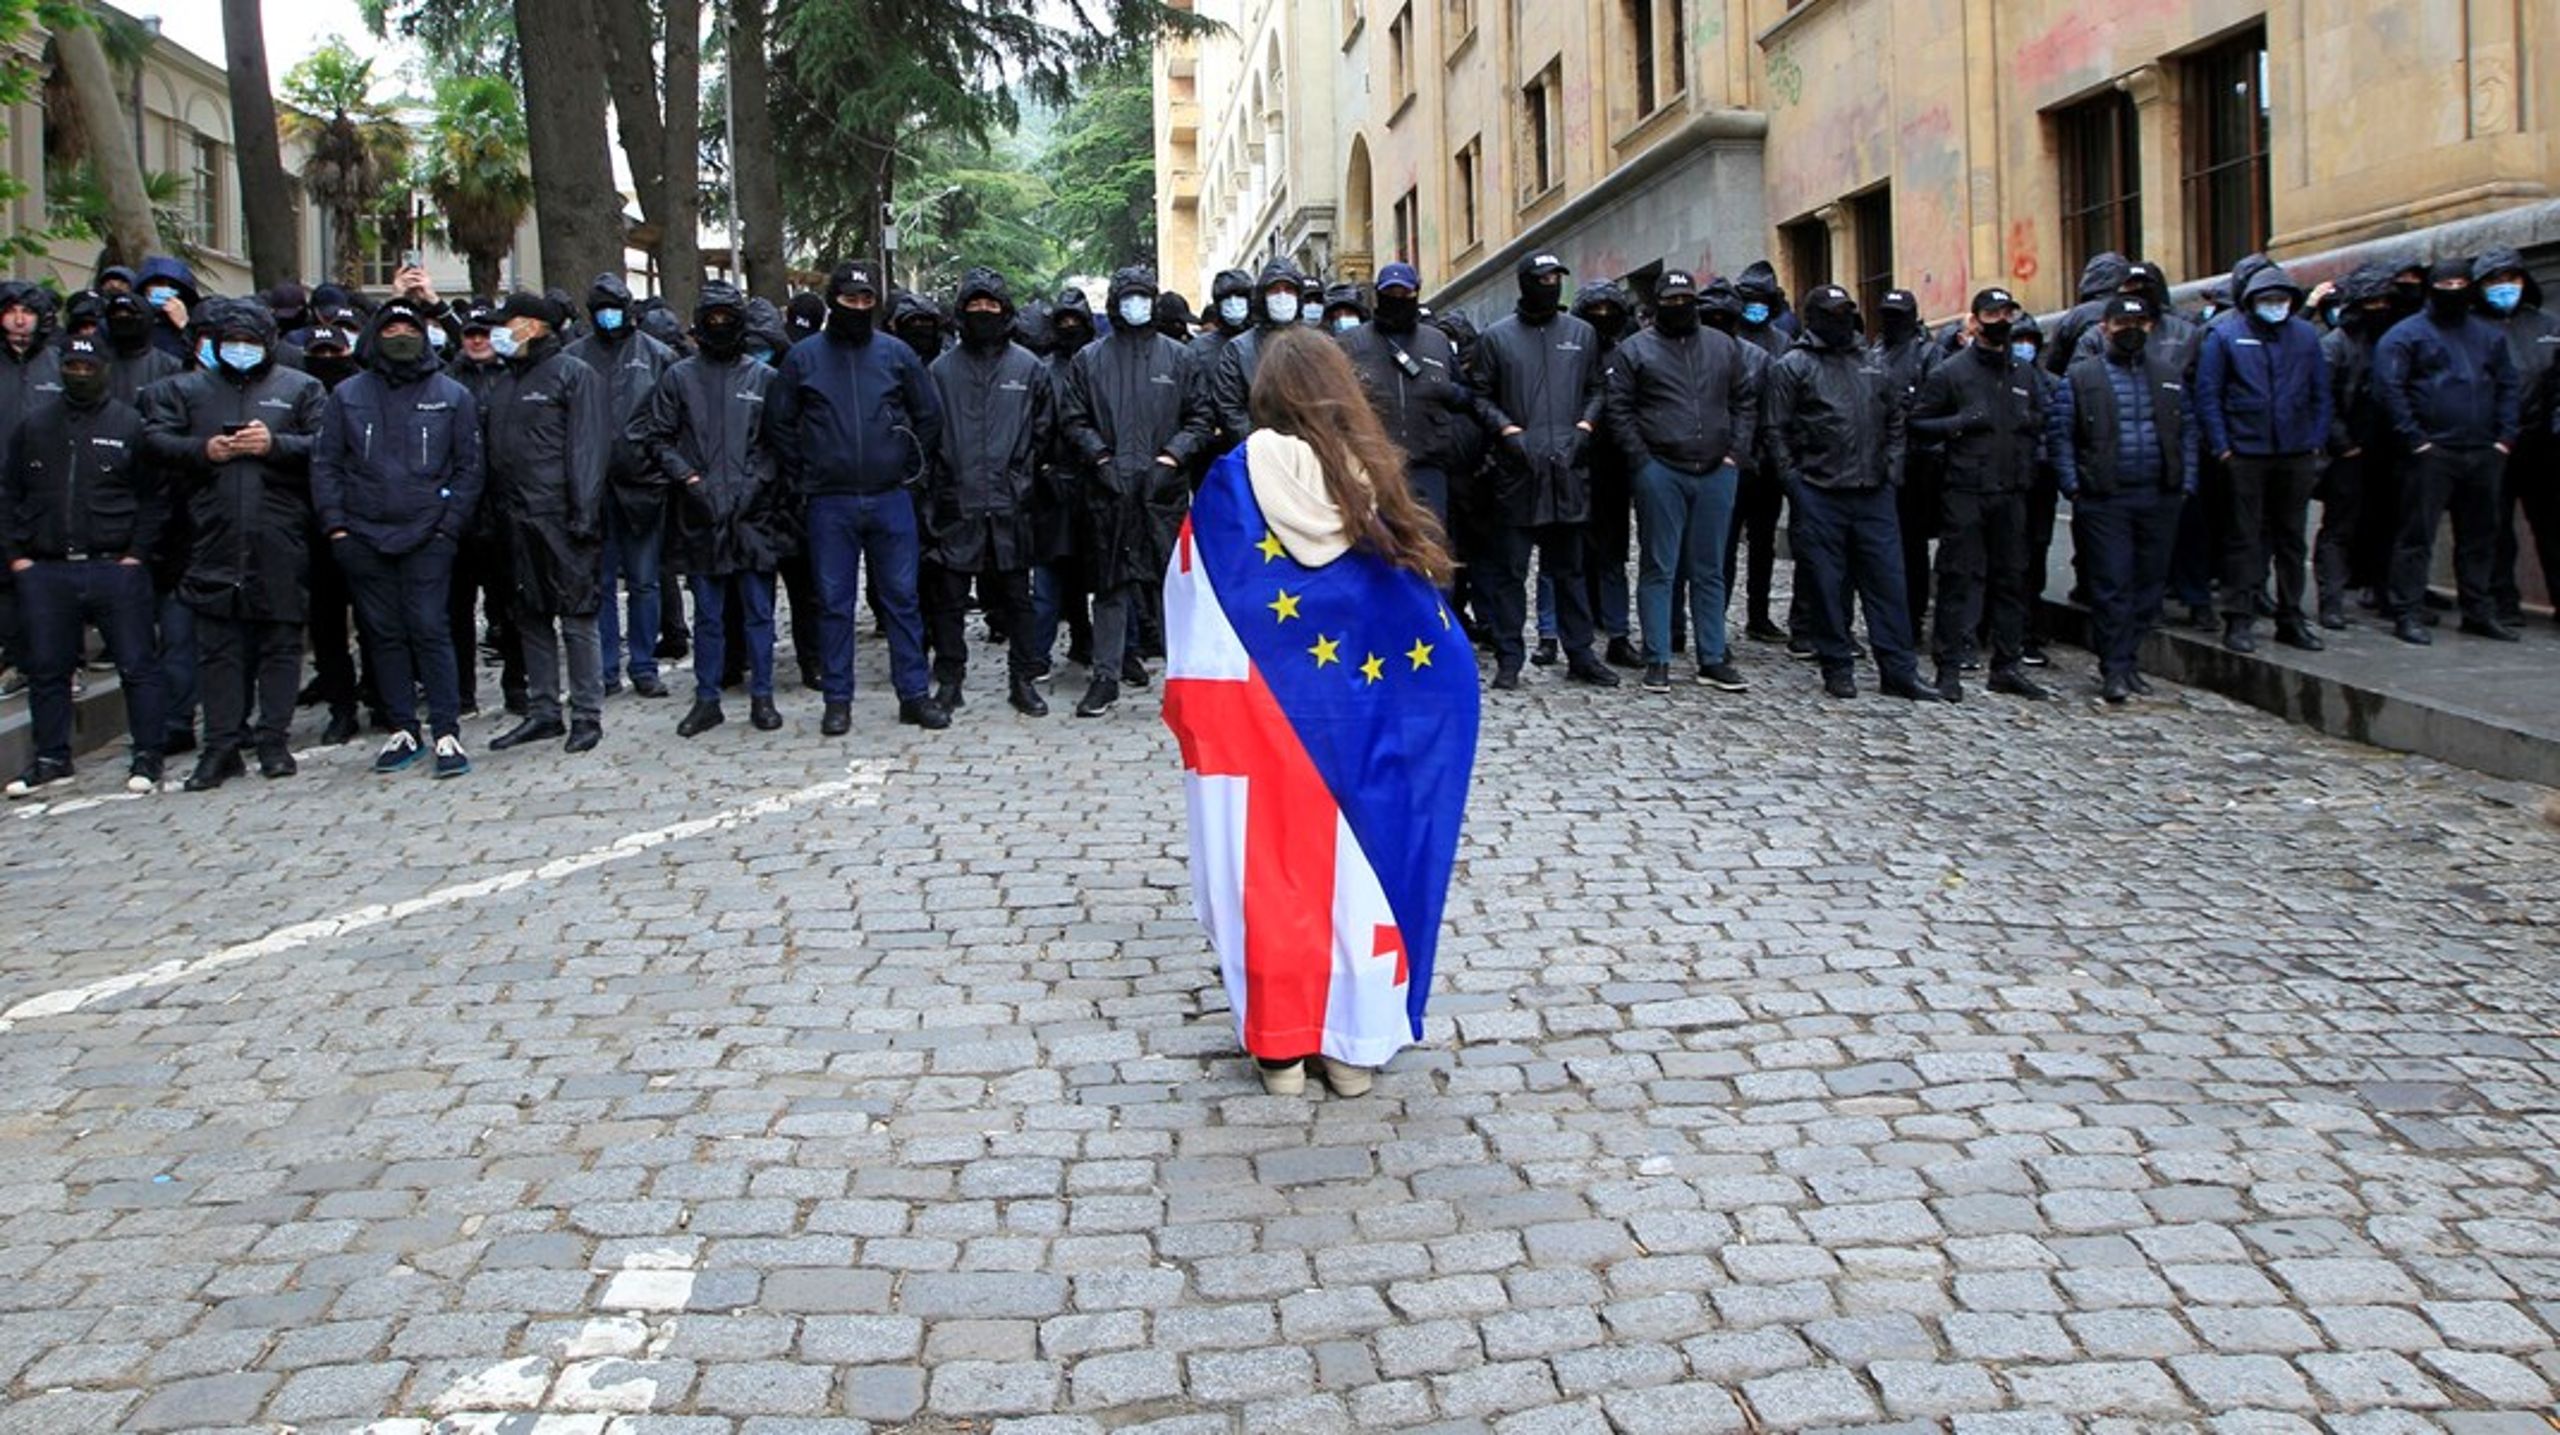 En ung kvinde svøbt i Georgiens og EU's flag står foran maskerede politifolk i hovedstaden Tbilisi tirsdag. Tusinder af borgere har demonstreret mod vedtagelsen af en ny lov, de opfatter som antidemokratisk.